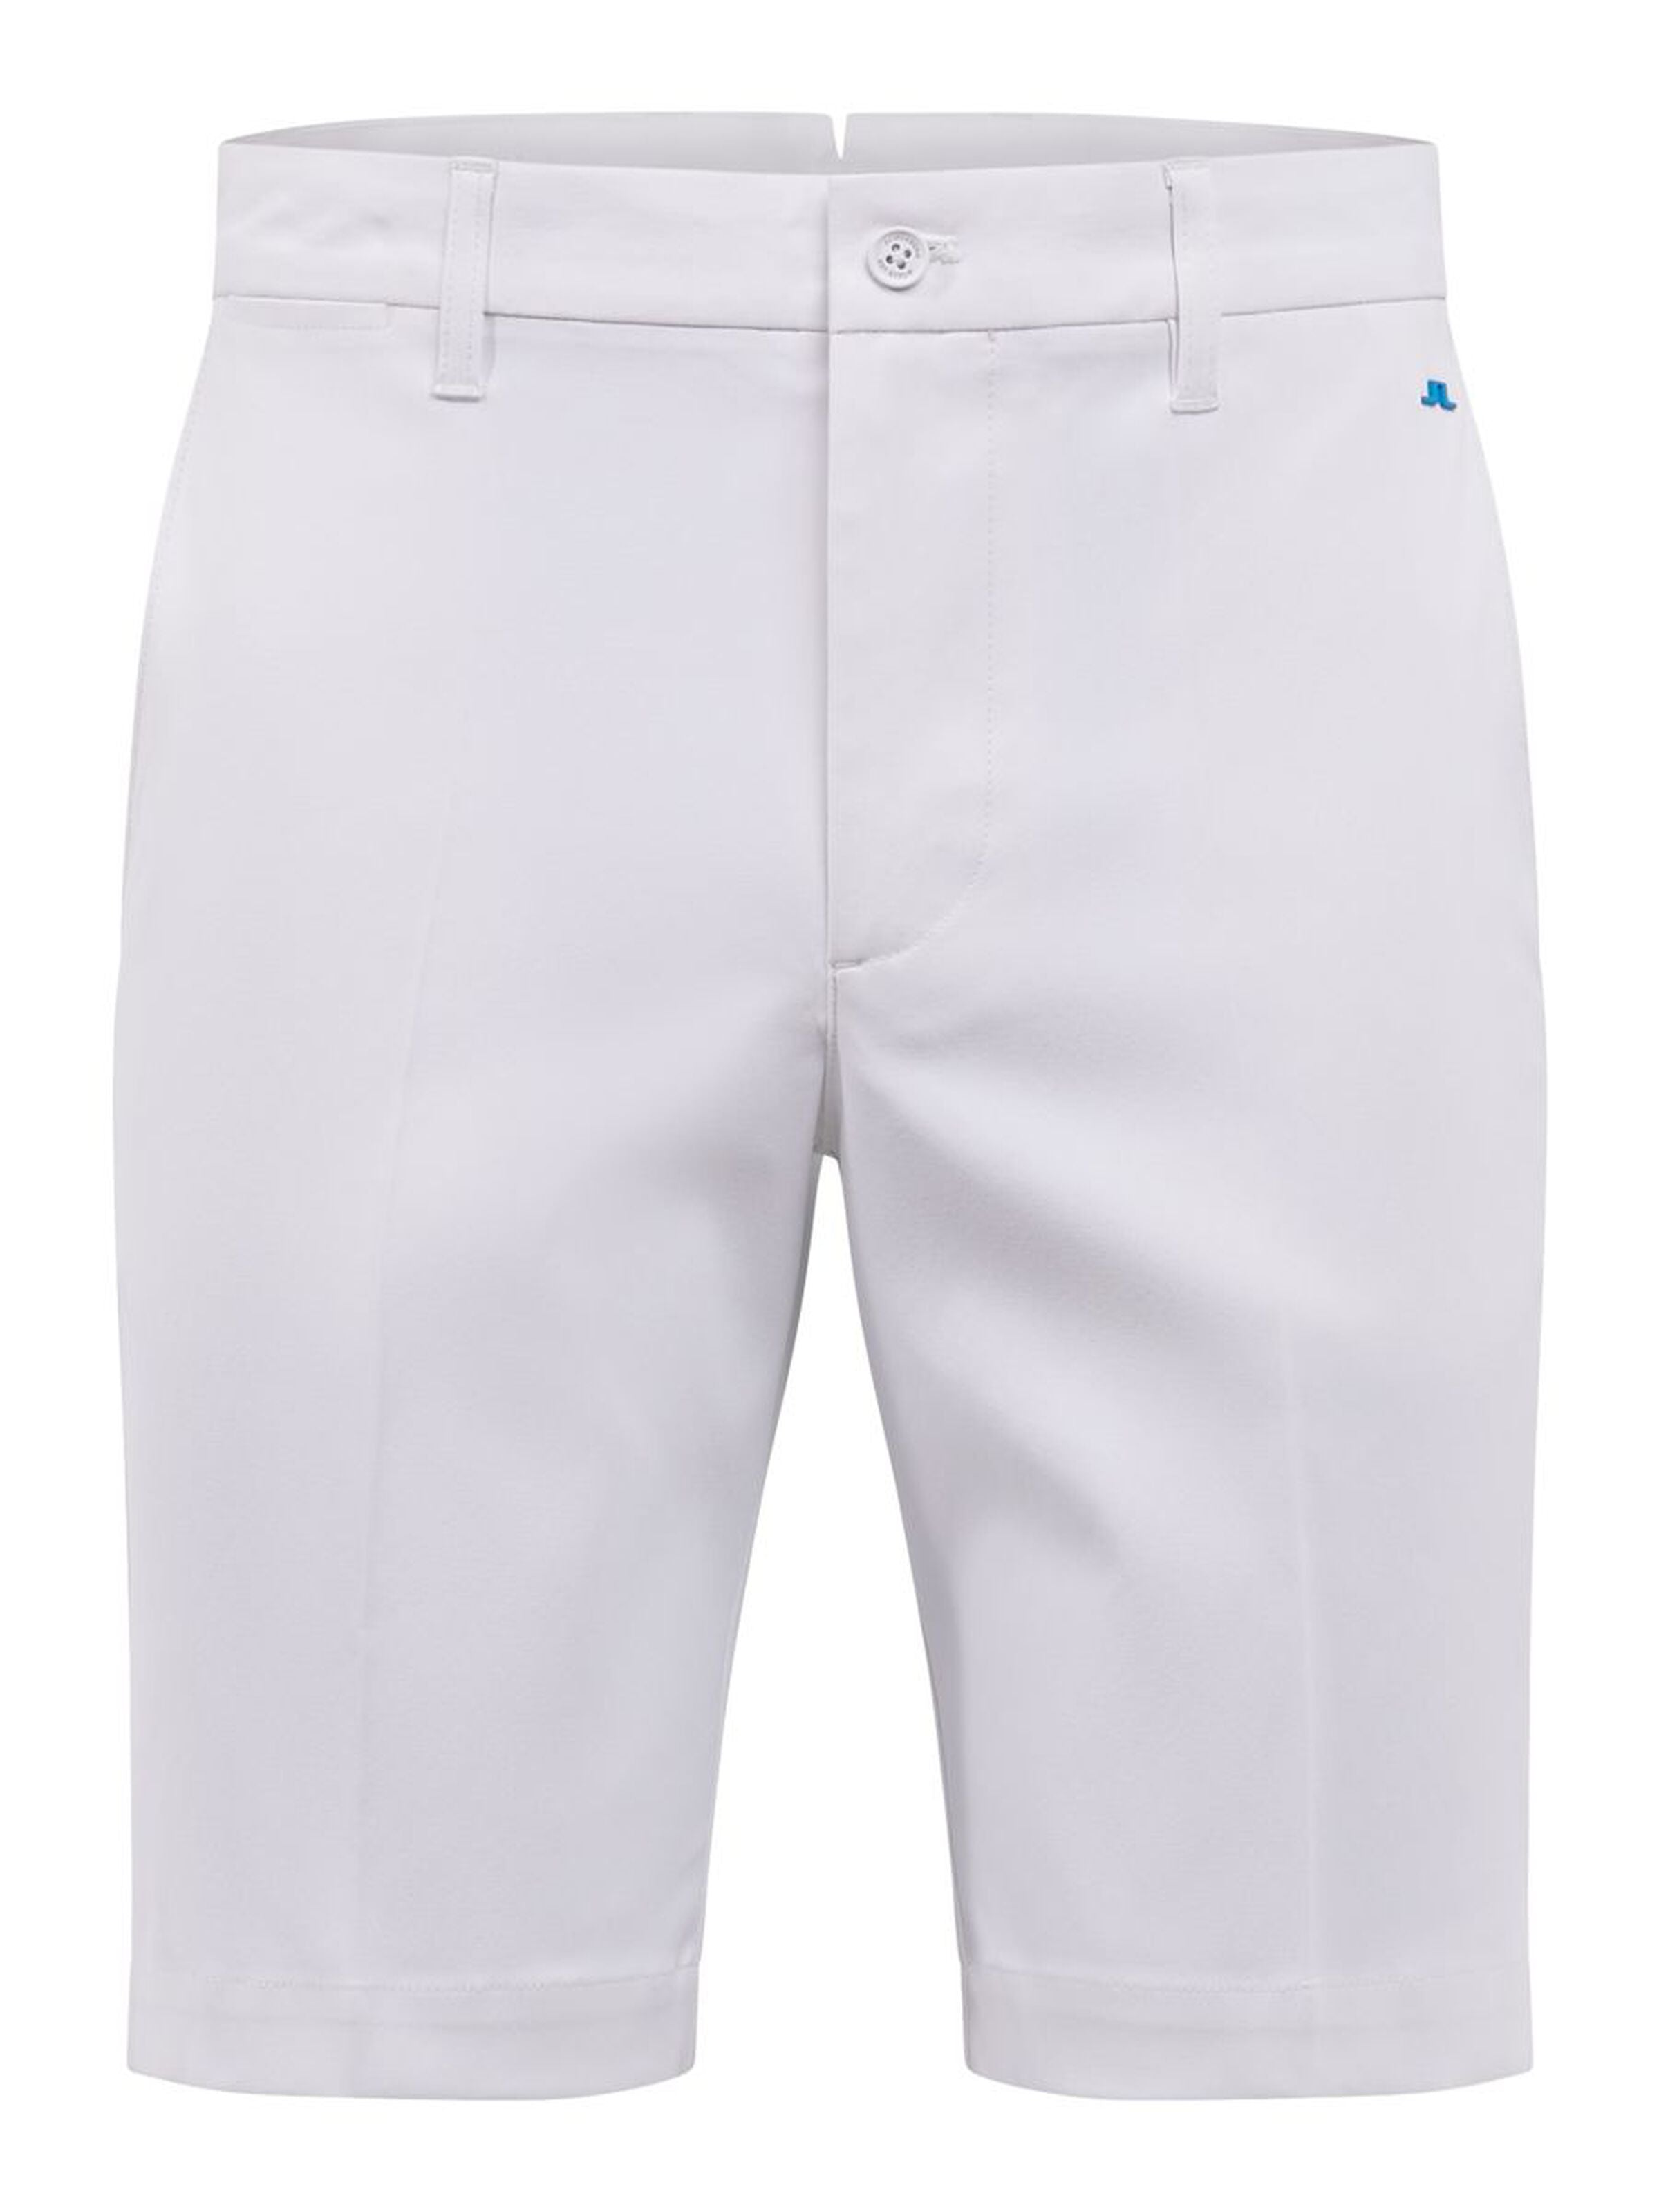 Eloy Golf Shorts - White